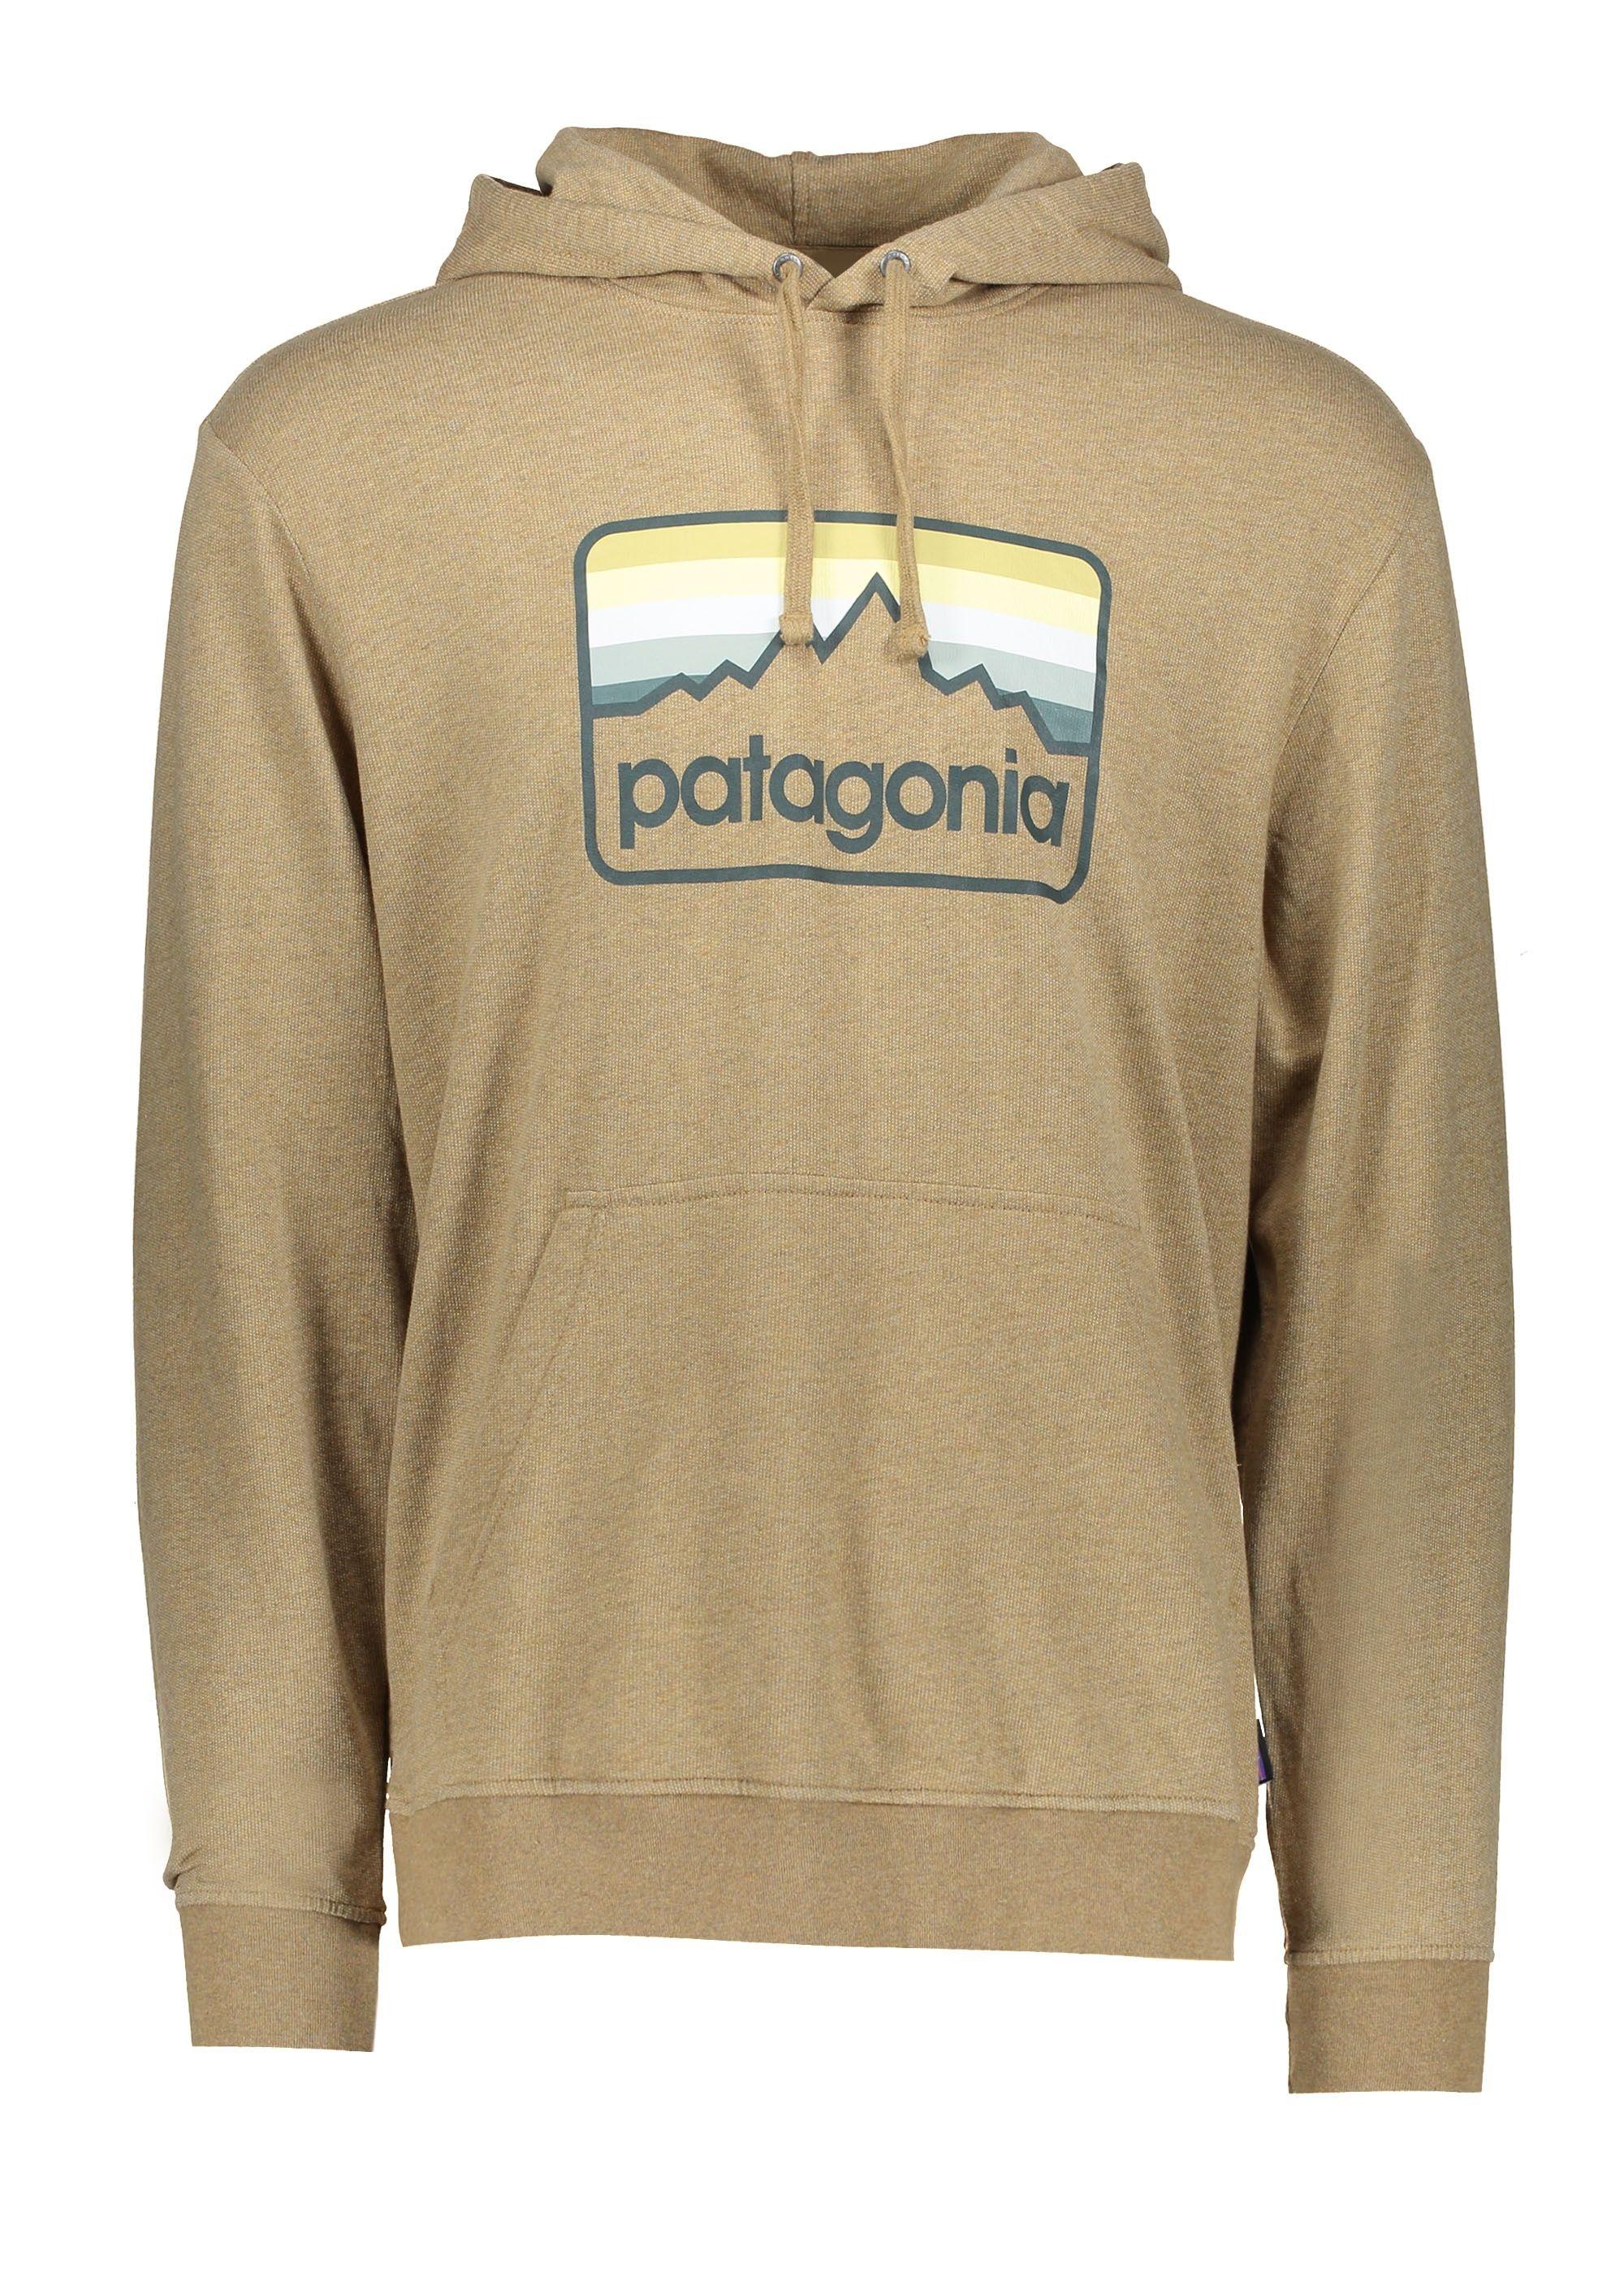 Brown Line Logo - Patagonia Line Logo Badge LW Hoody - Coriander Brown - Hoodies from ...